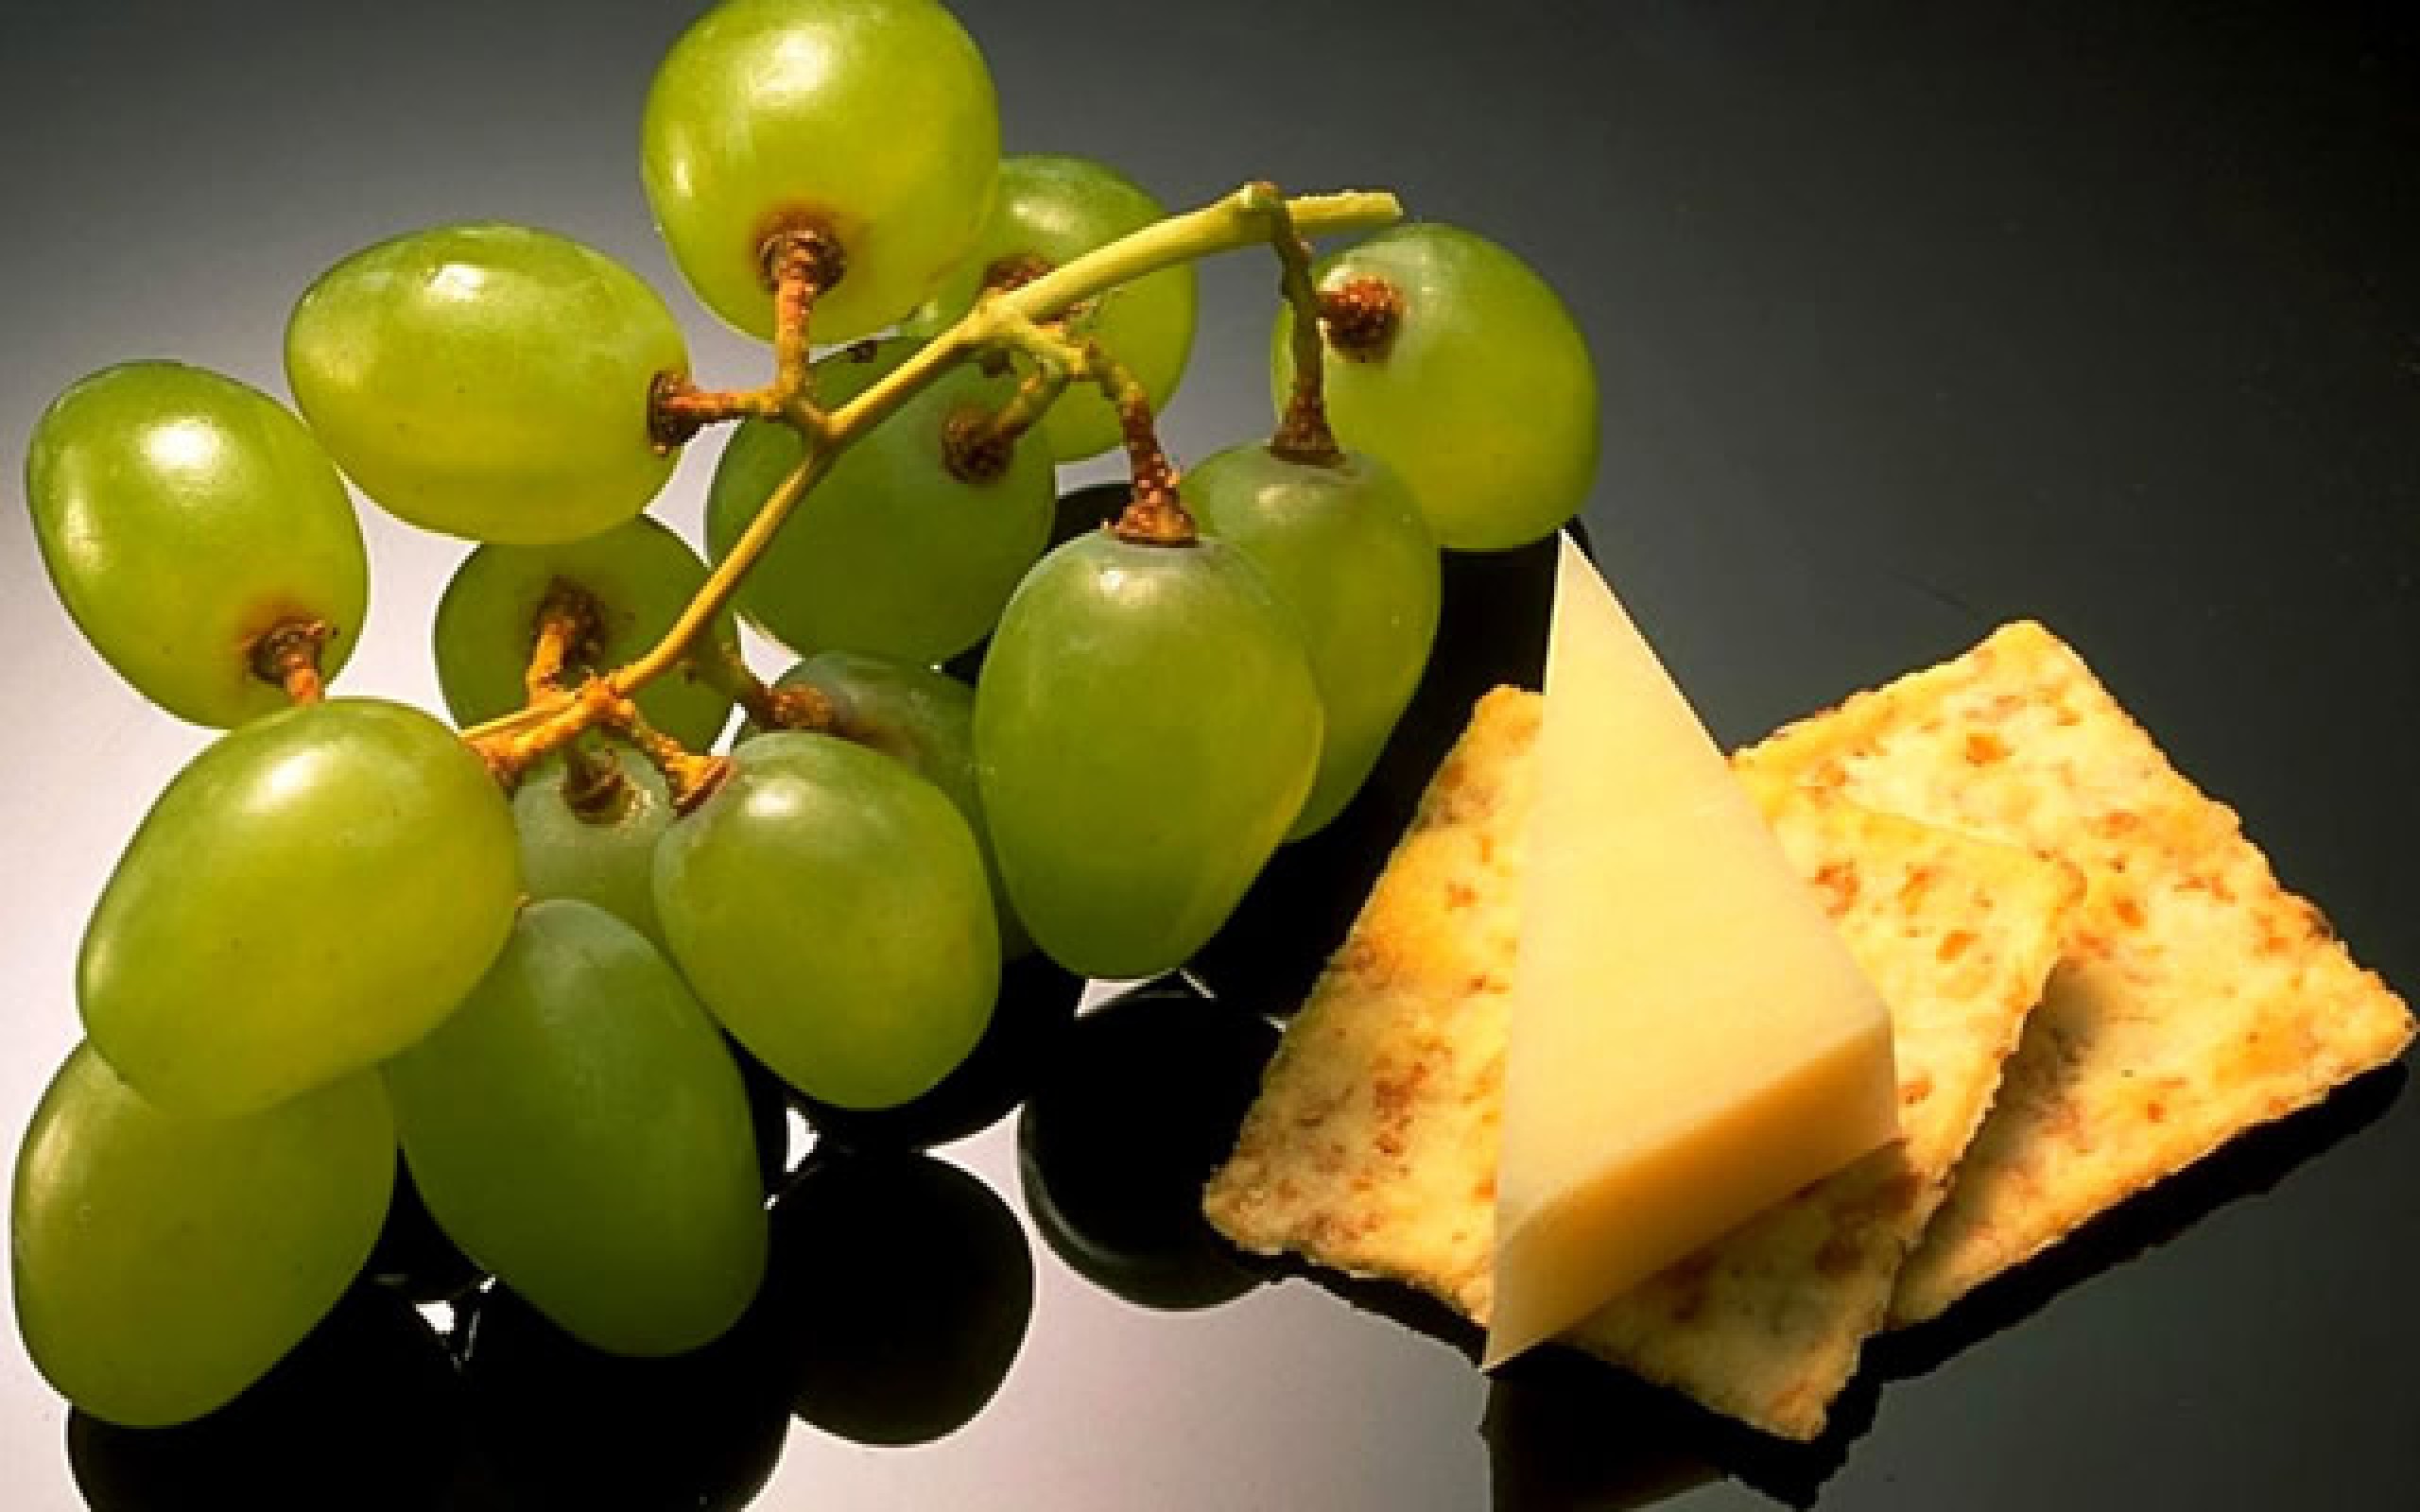 Досить часто виноград вживають перед прийомом основної їжі, так як завдяки високому вмісту фруктової кислоти апетит людини посилюється